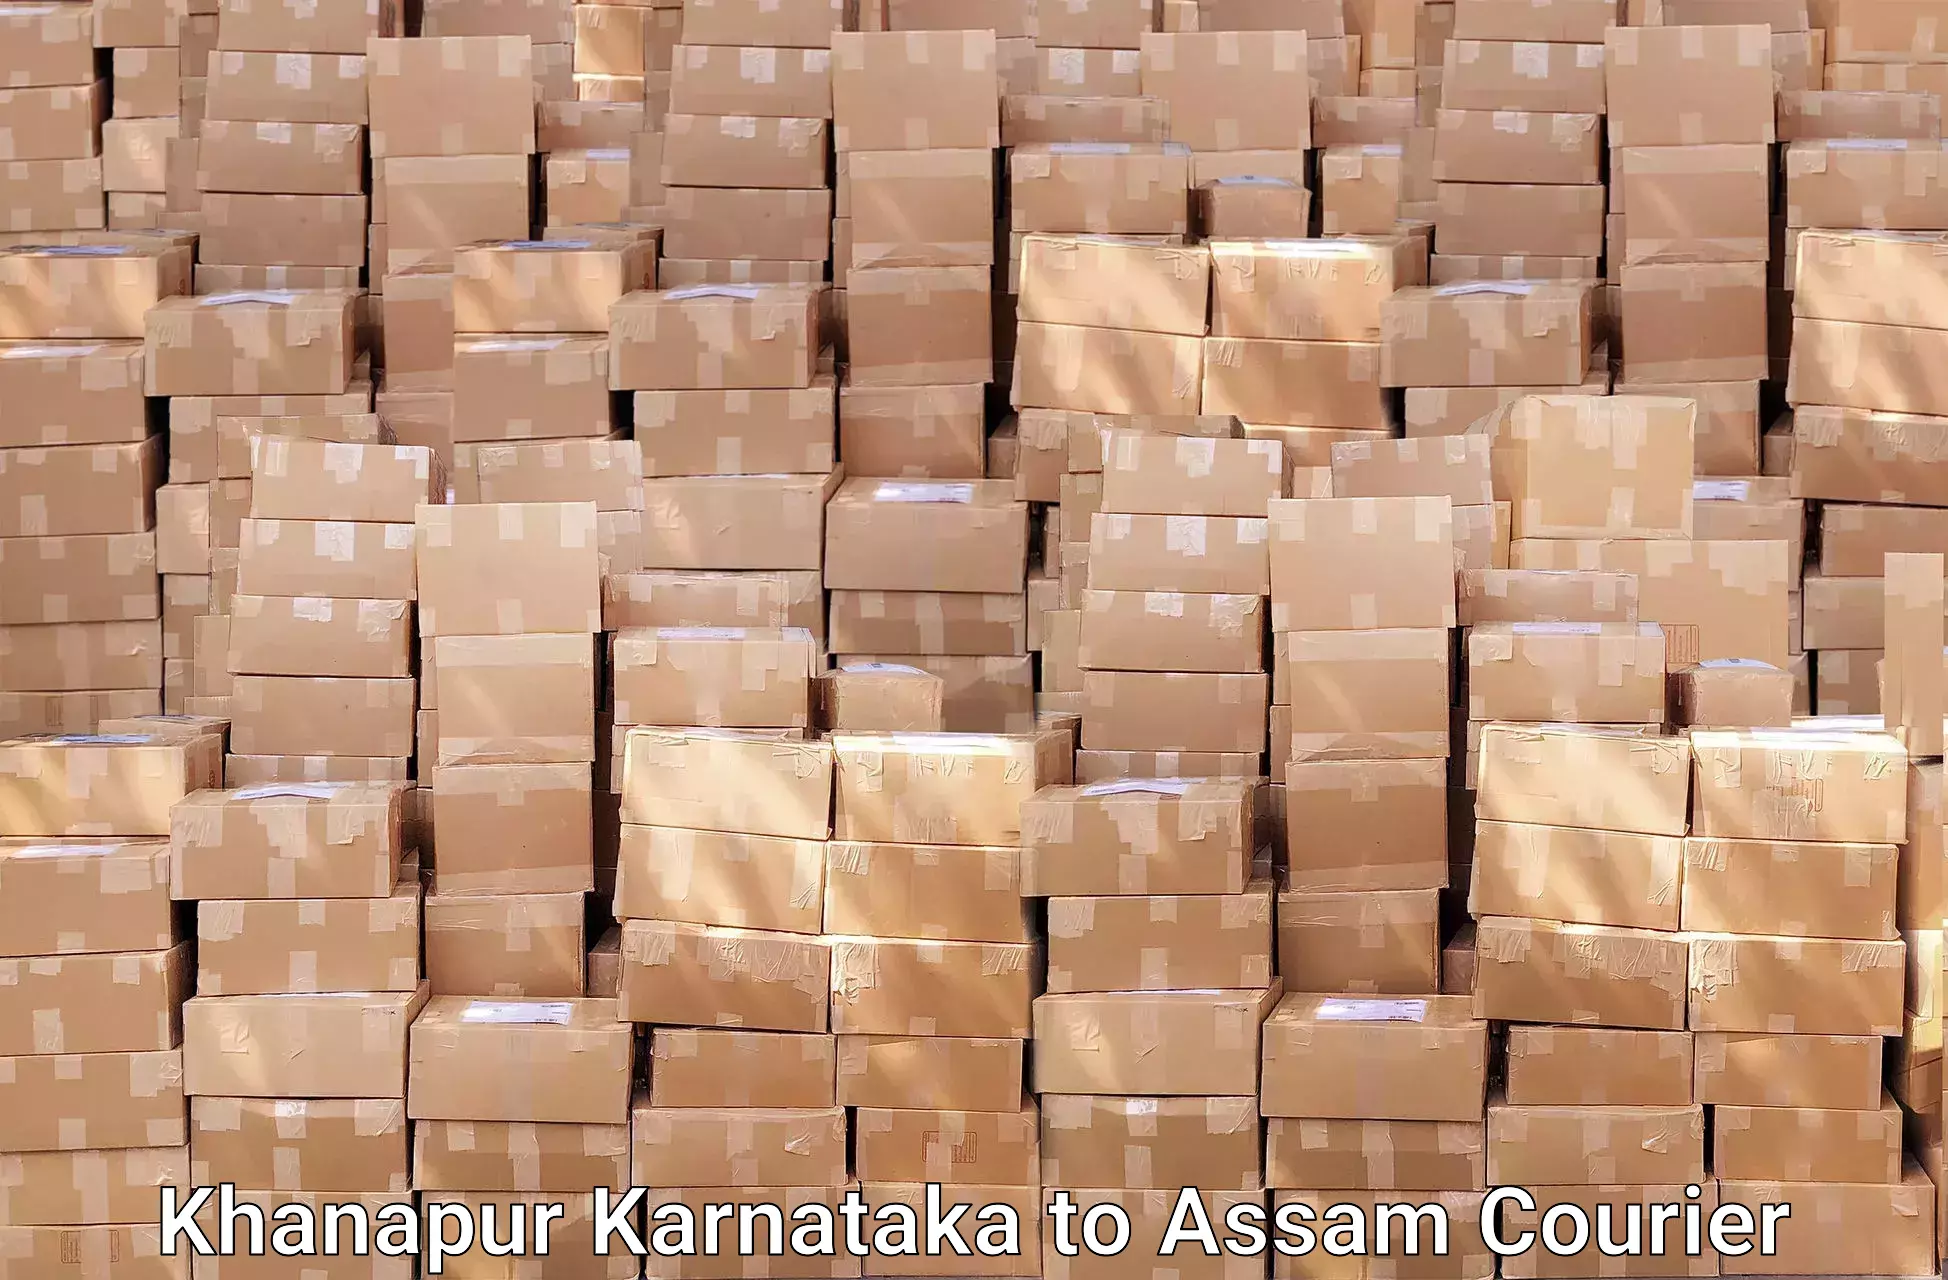 Furniture moving strategies Khanapur Karnataka to Sonitpur